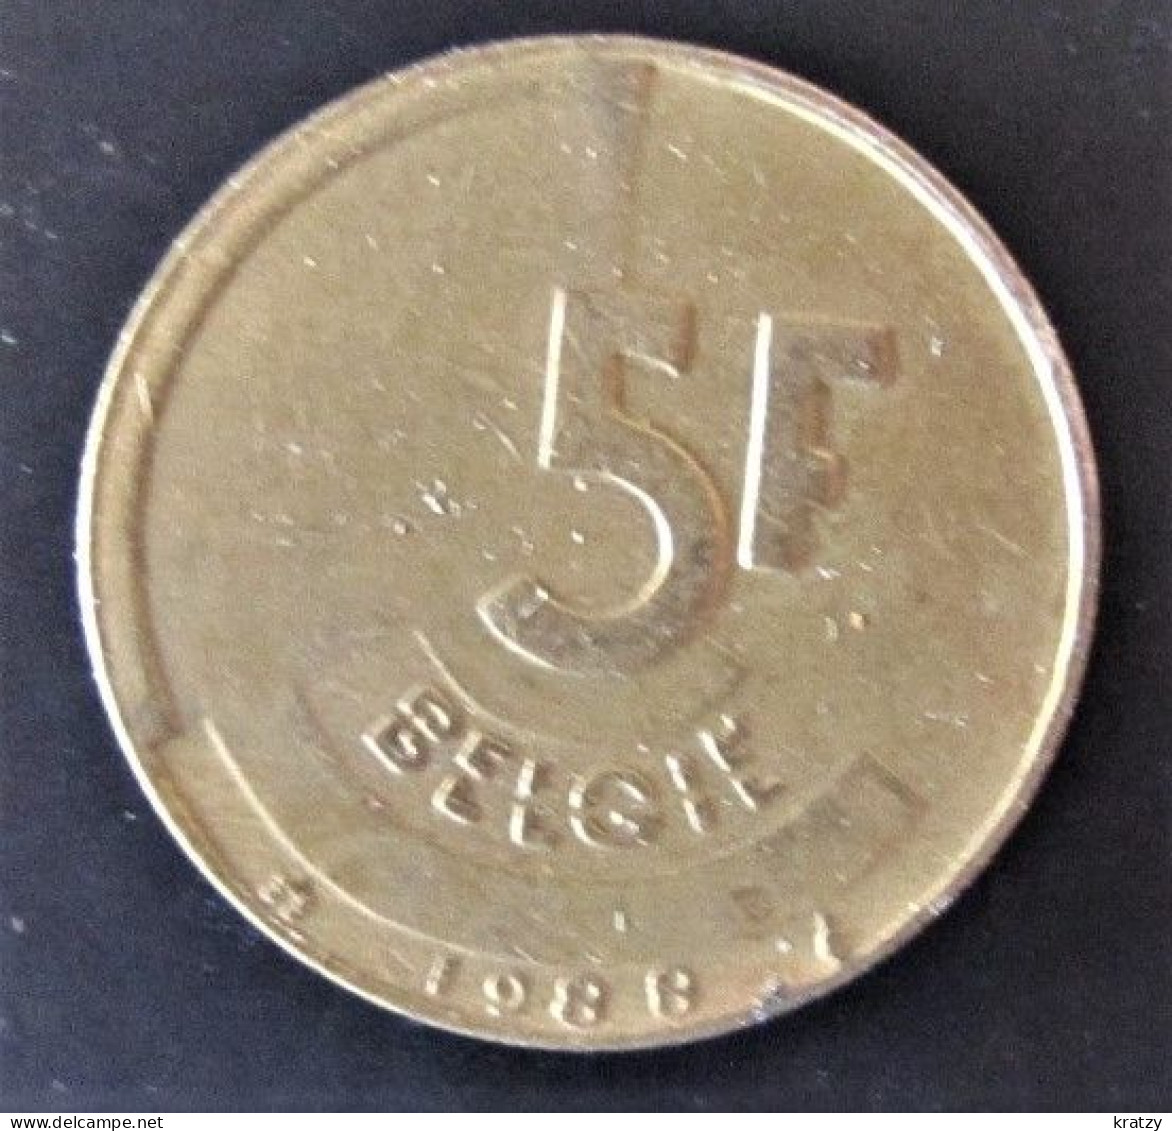 BELGIQUE - Pièce De 5 Francs - Cupro-nickel-aluminium - 1988 - 20 Francs